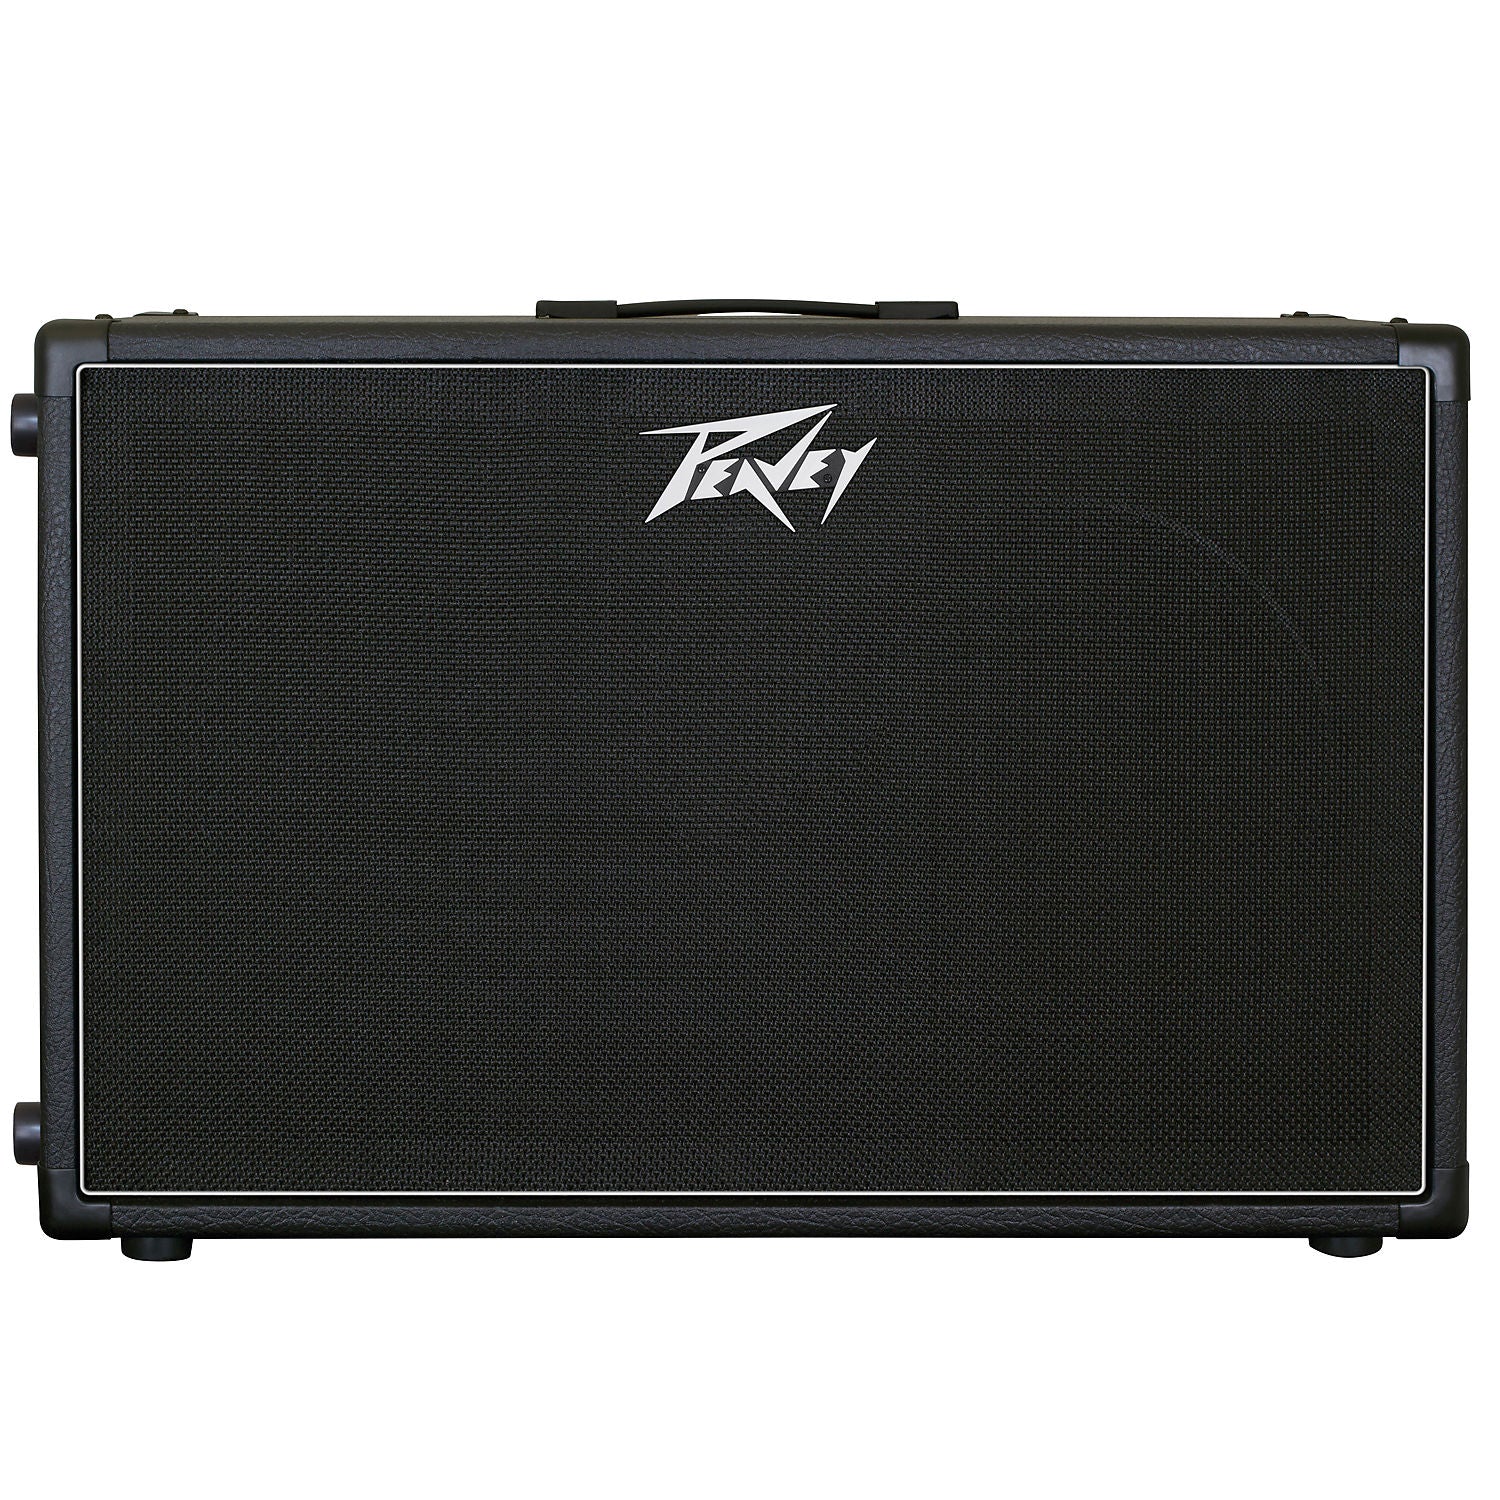 Peavey 212-6 Guitar Speaker Cabinet (50 Watts, 2x12 Inch), 16 Ohms